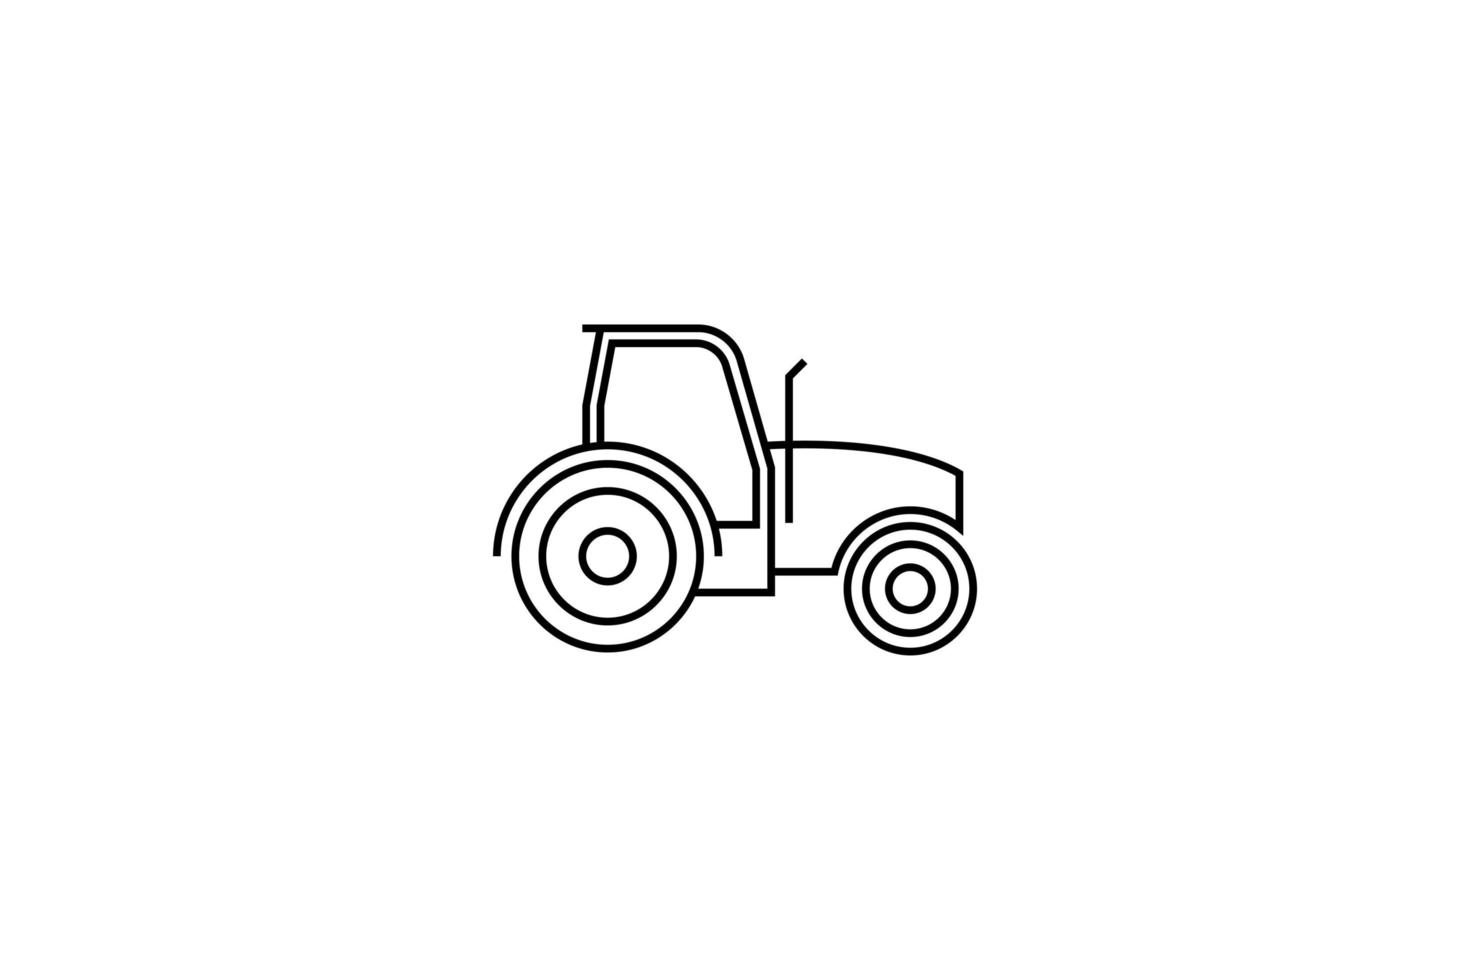 modello di logo di fattoria, illustrazione vettoriale di design agricolo